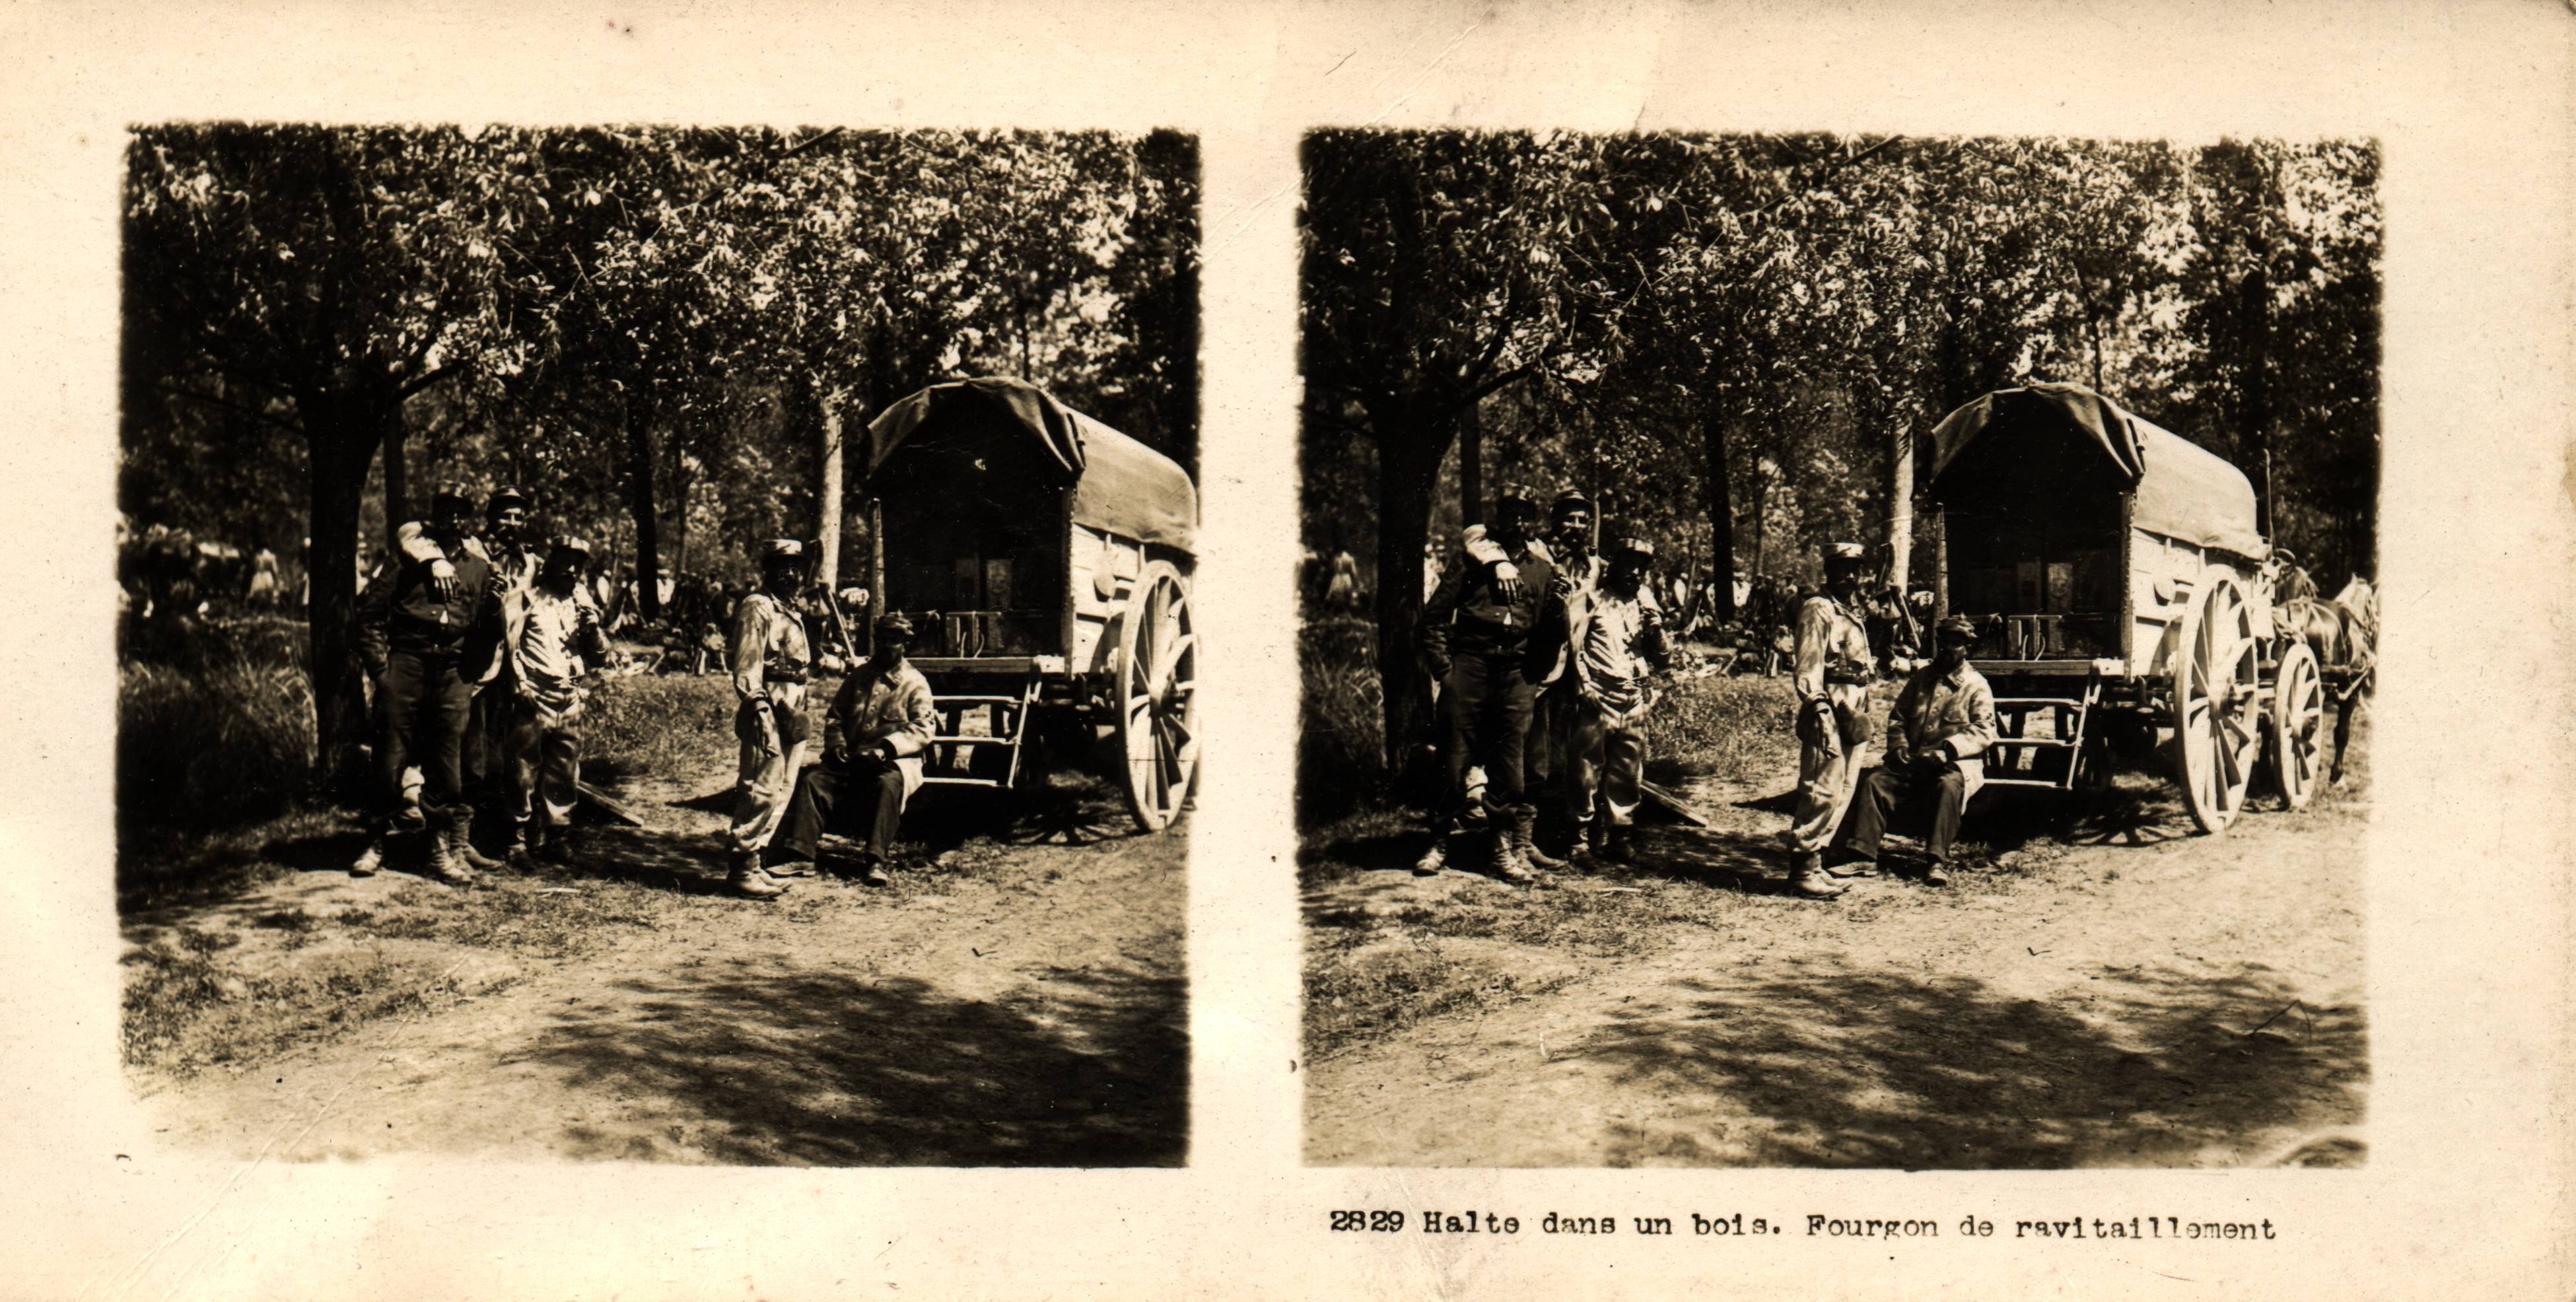 "Halte dans un bois. Fourgon de ravitaillement" - Halt in the woods. Supply van